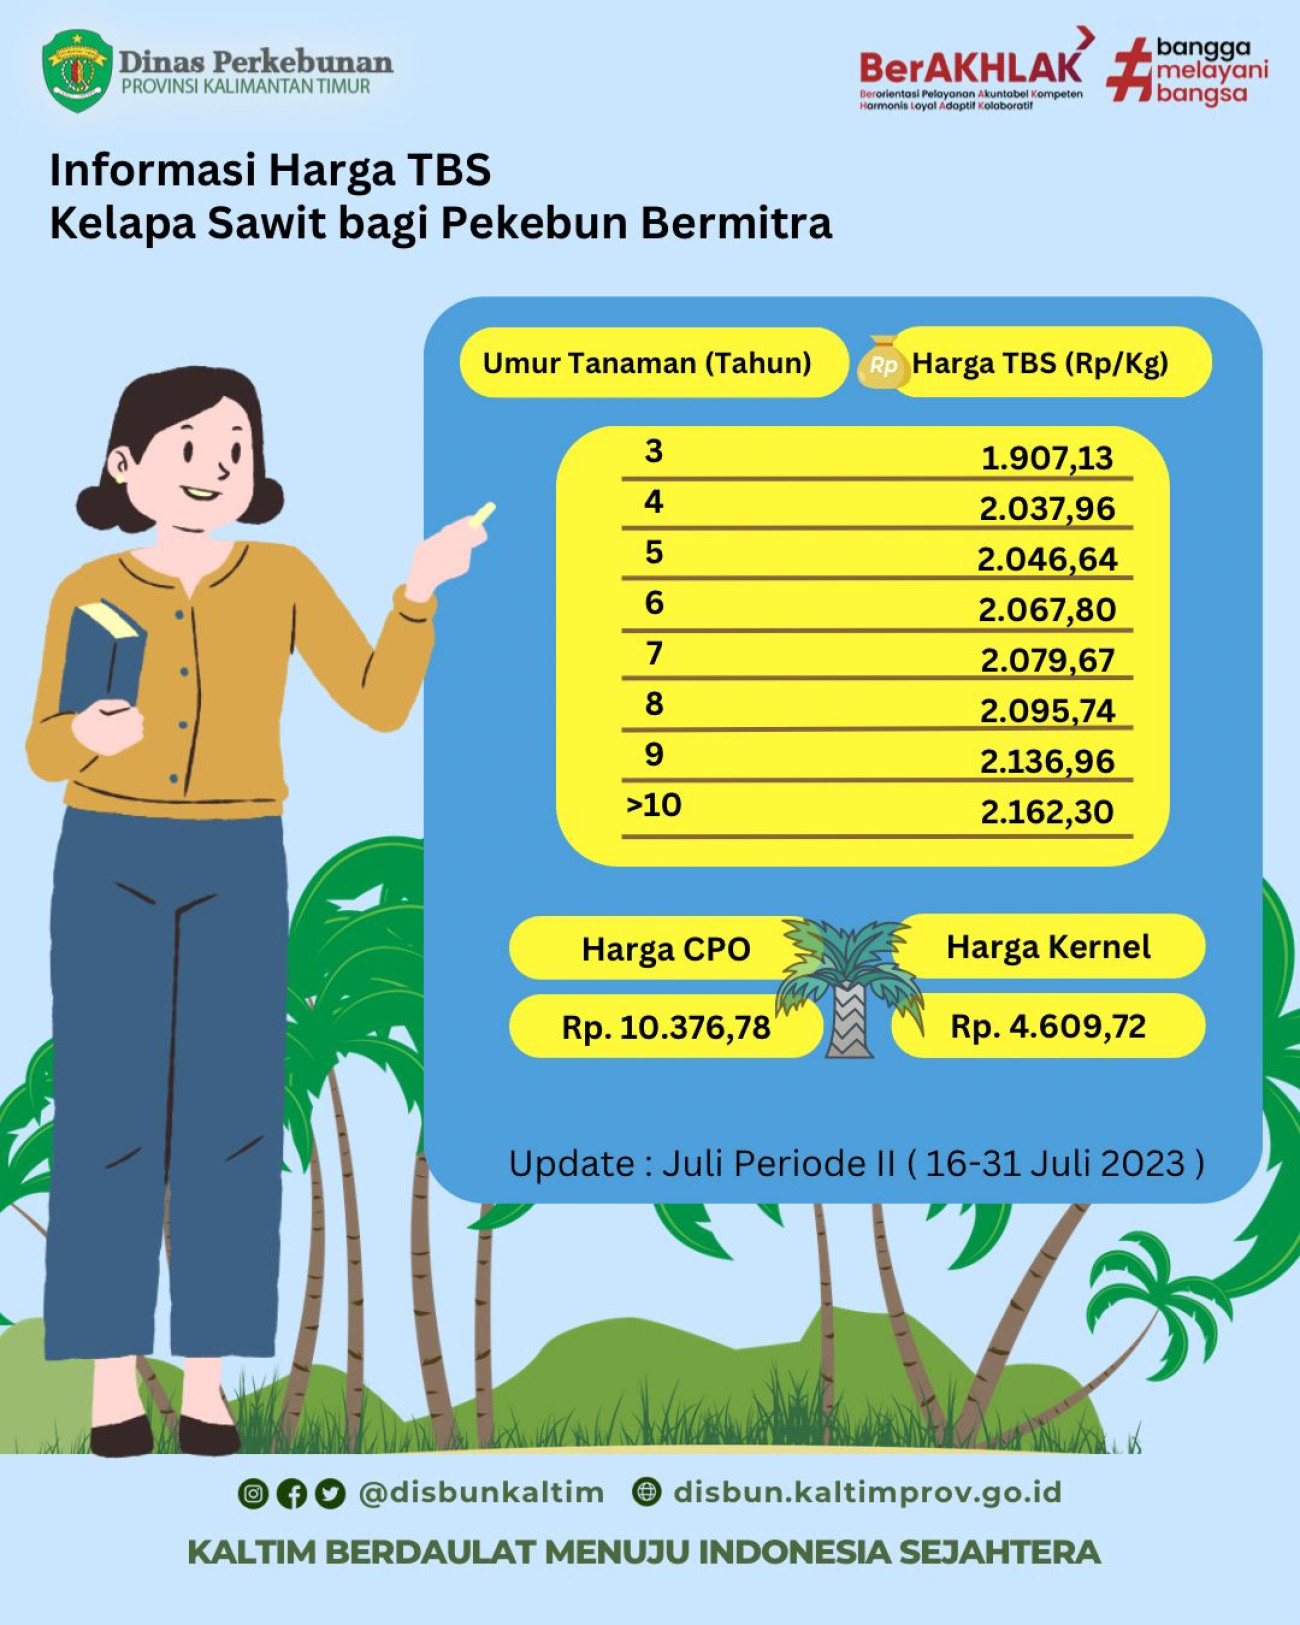 Informasi Harga TBS Kelapa Sawit Bagi Pekebun Bermitra Periode 16 - 31 Juli 2023